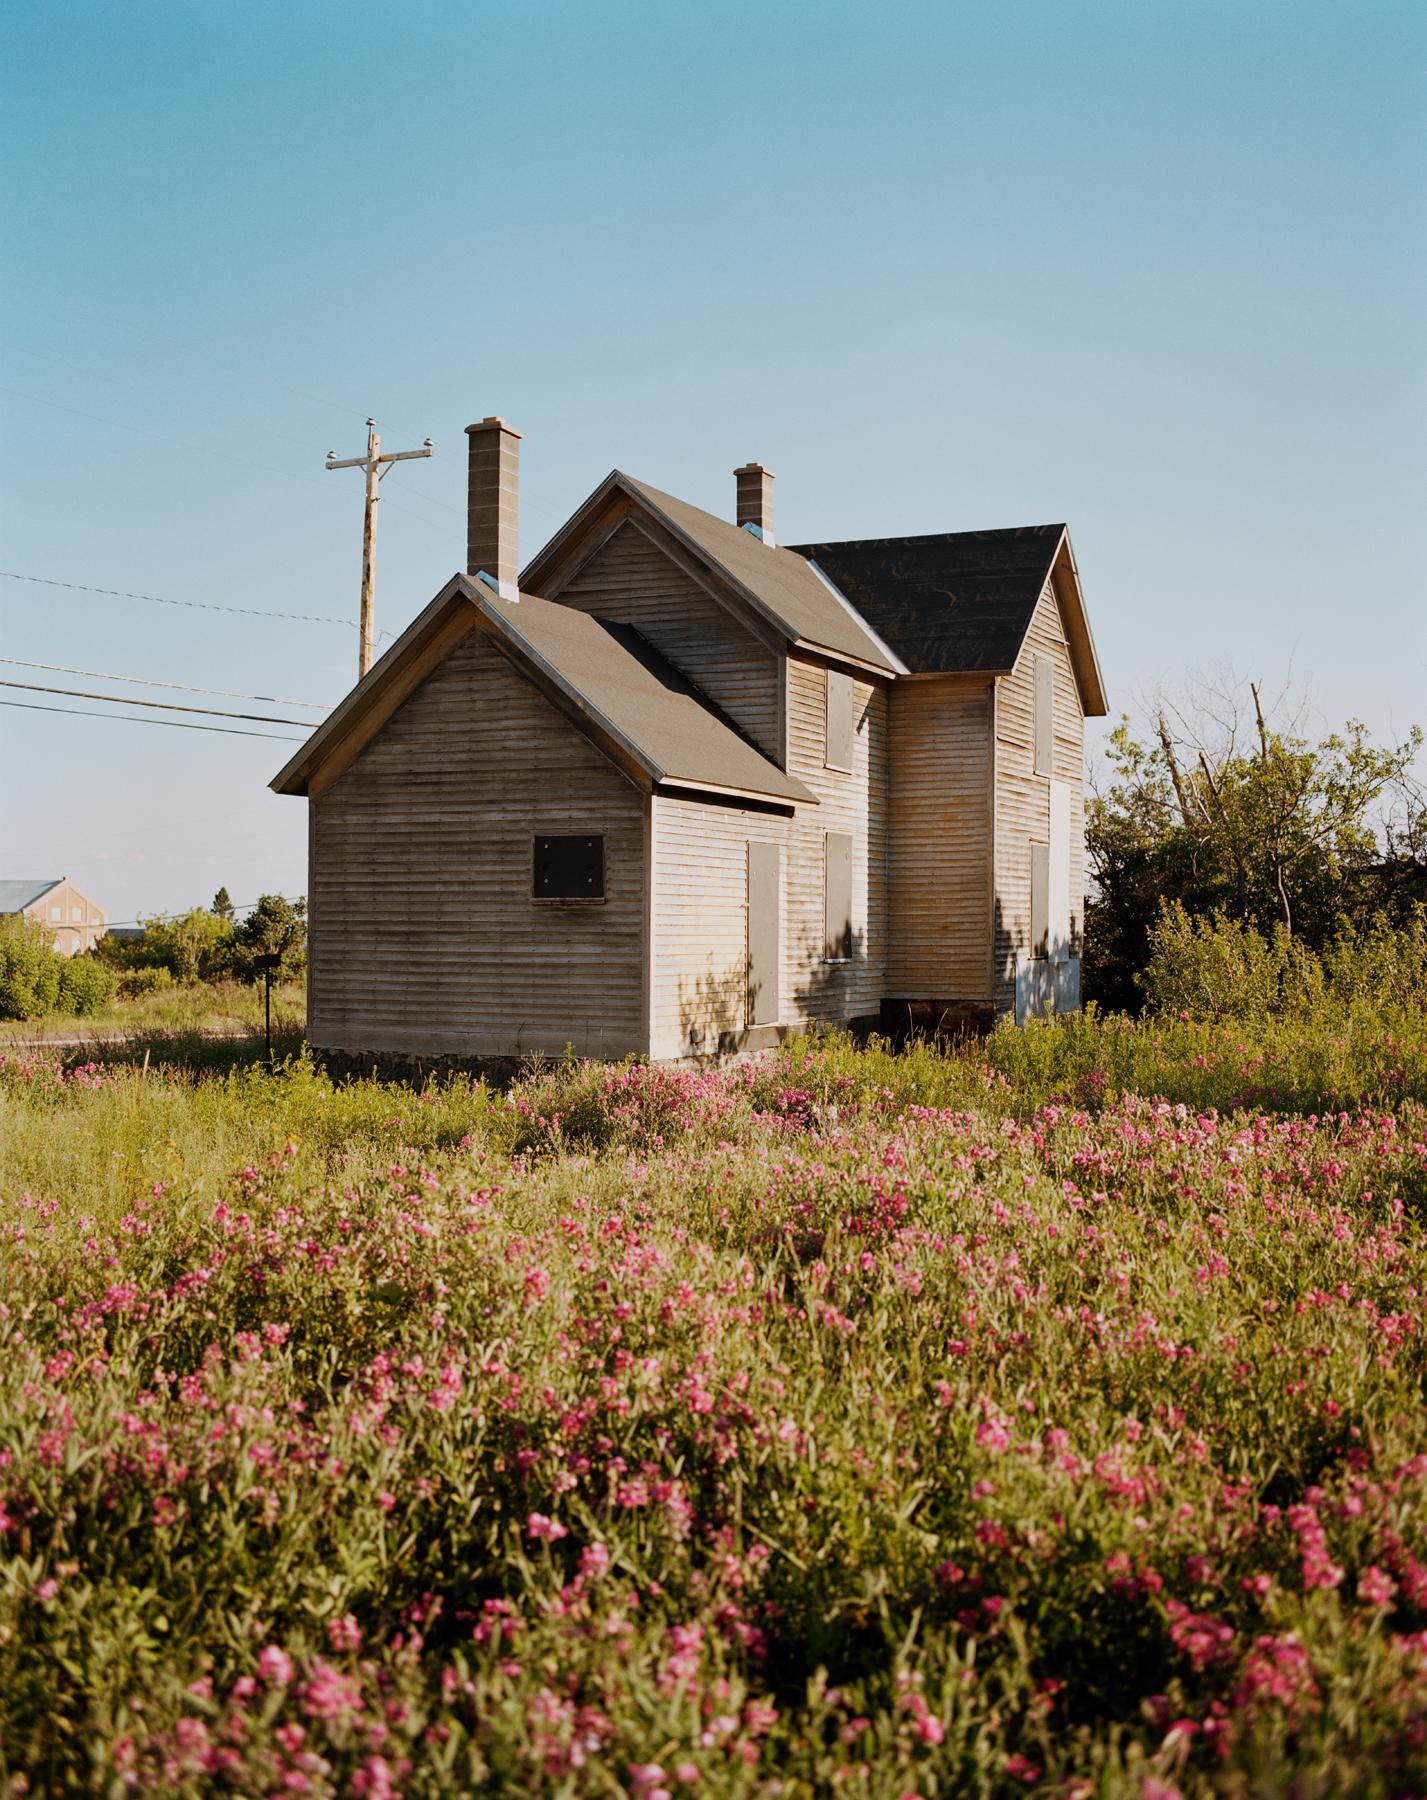 Carnet de croquis d'Omaha : House in Field, 2005-2018 - Photographie contemporaine américaine